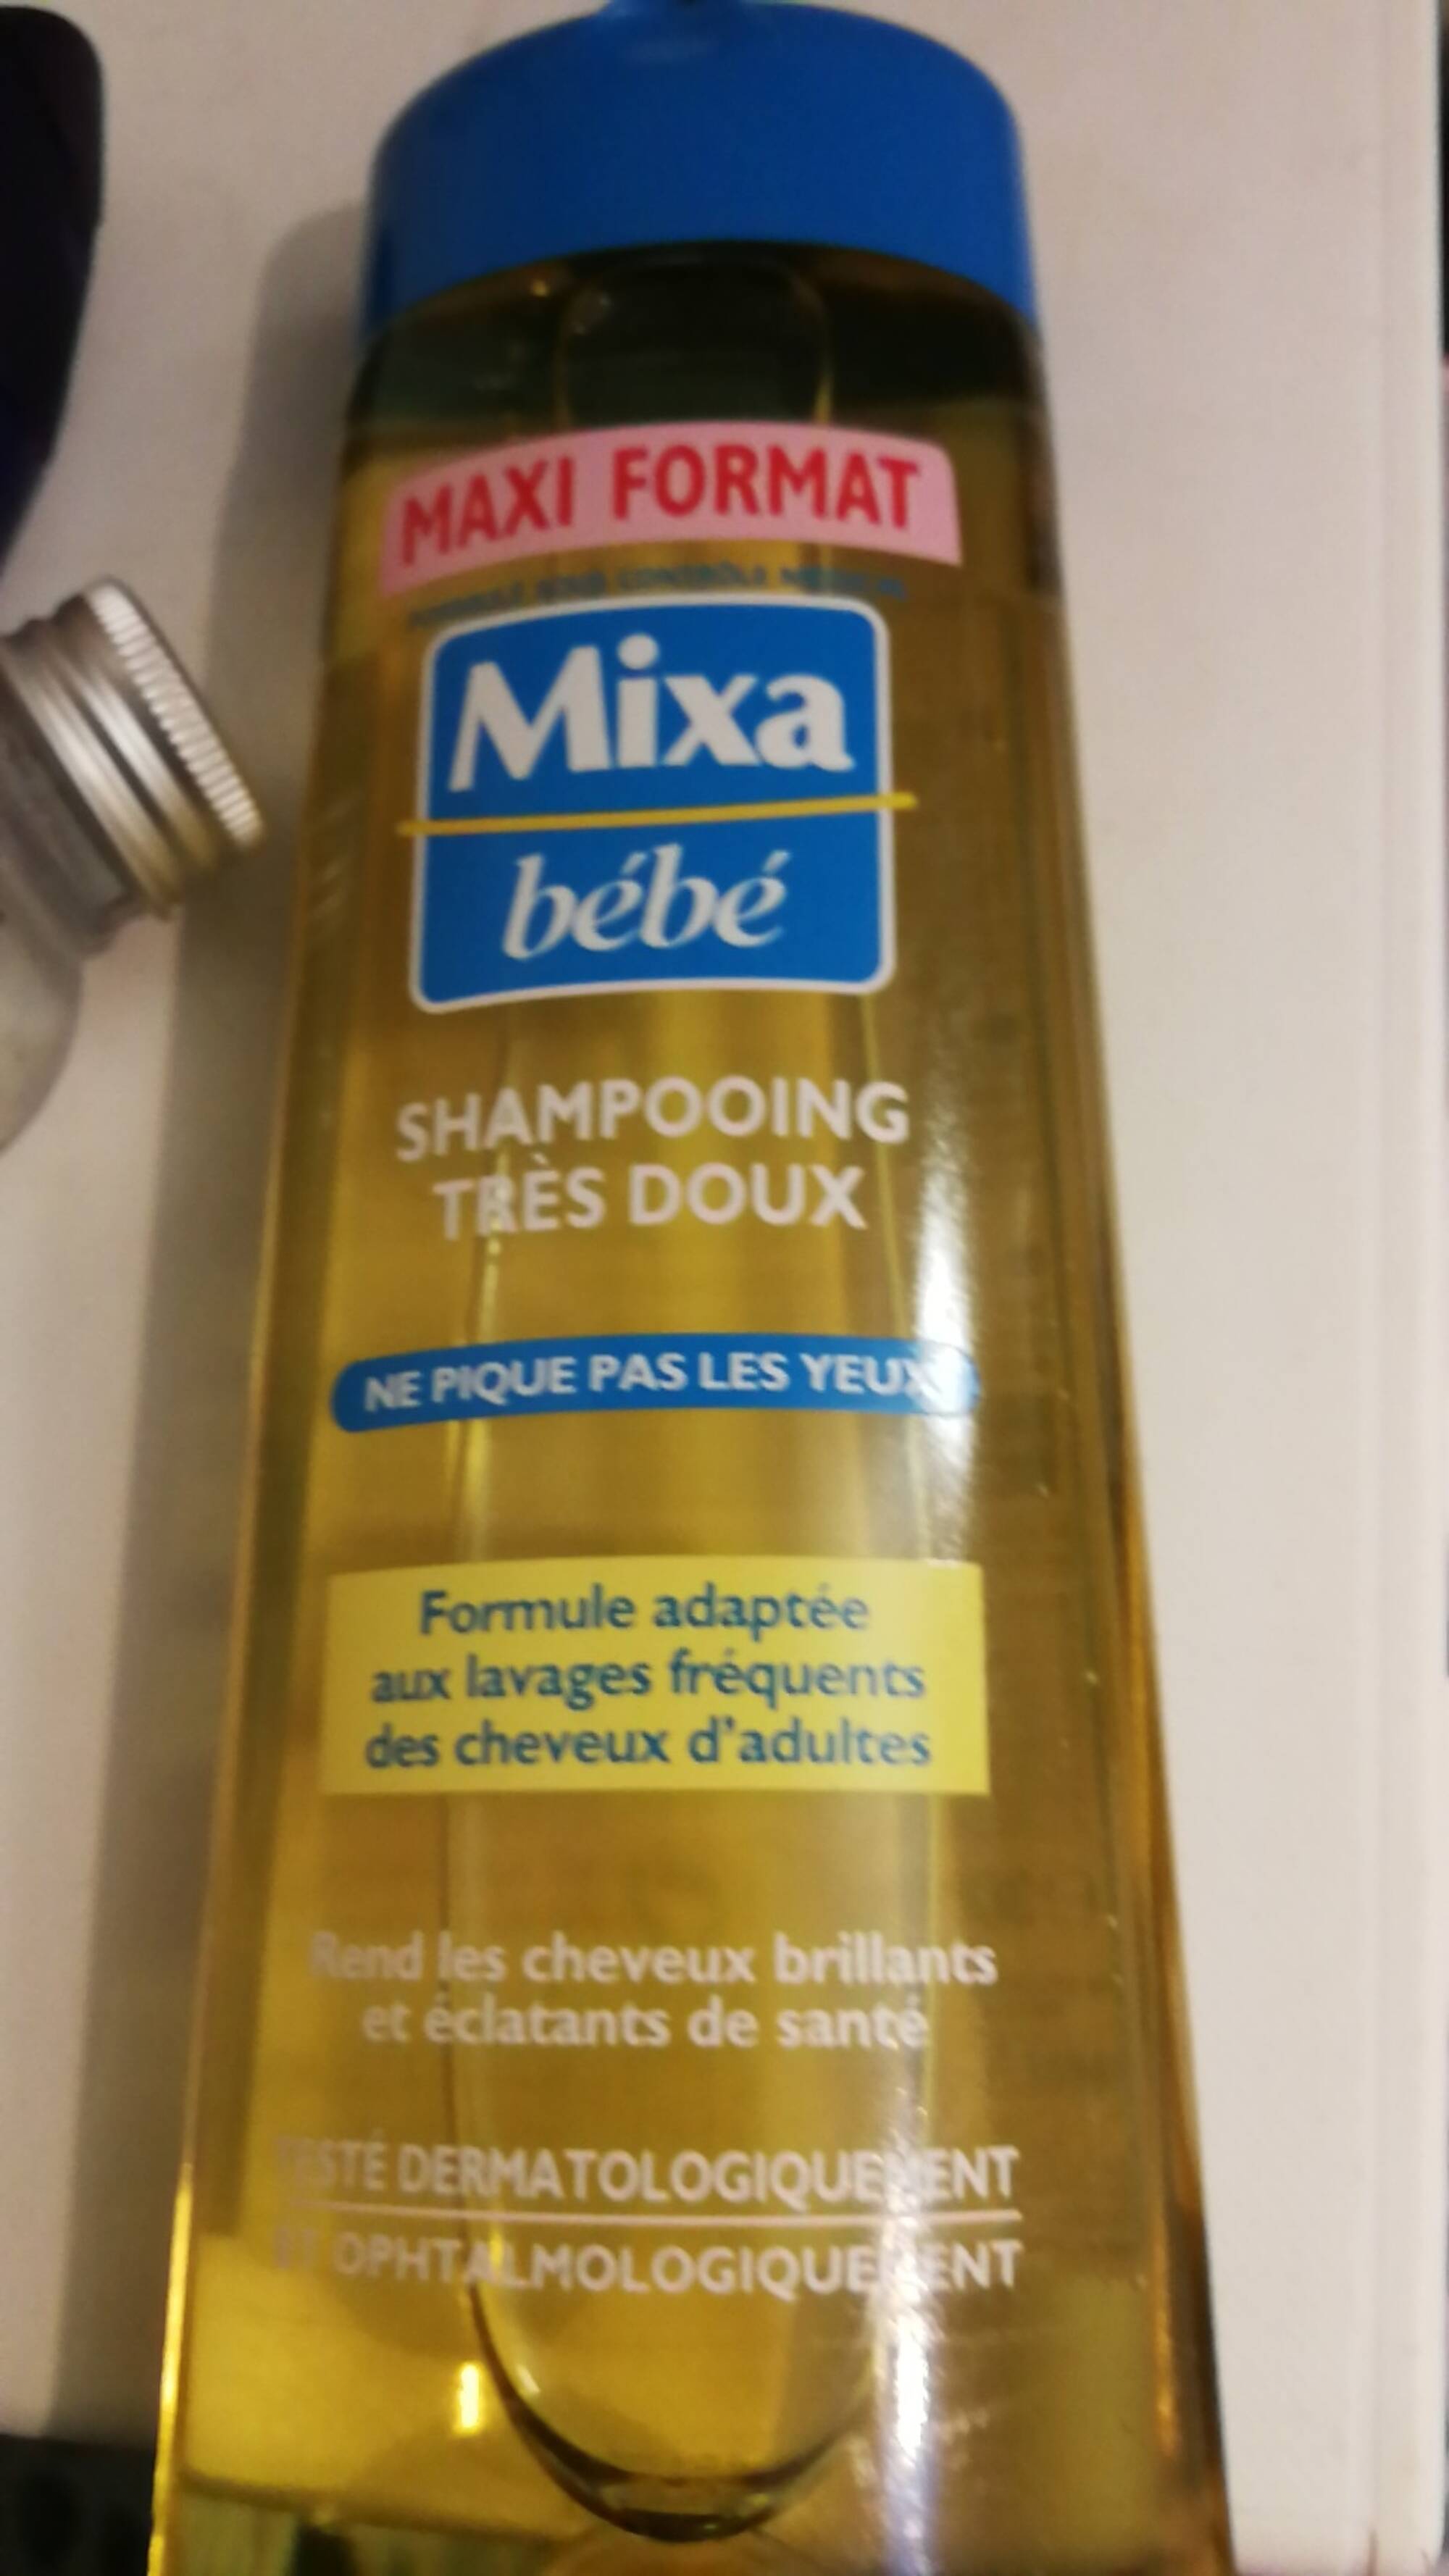 Shampooing Très Doux - Mixa Bébé - Mixa